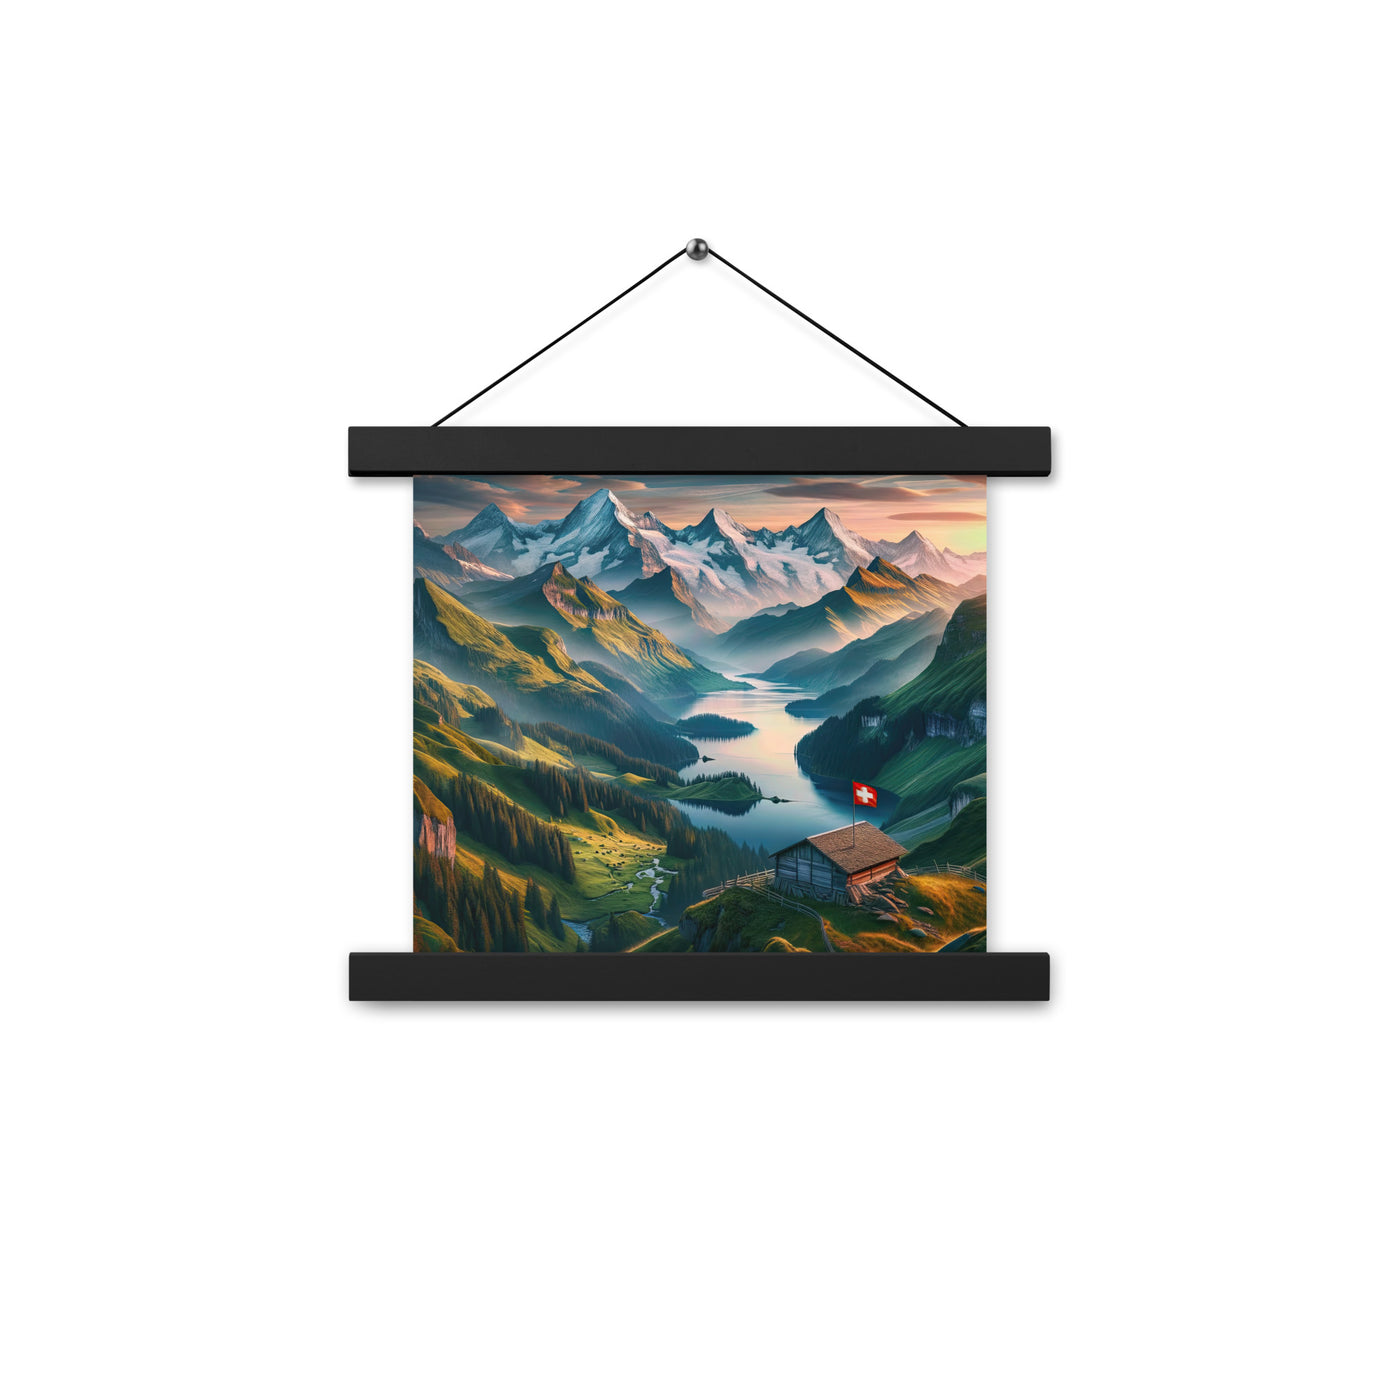 Schweizer Flagge, Alpenidylle: Dämmerlicht, epische Berge und stille Gewässer - Premium Poster mit Aufhängung berge xxx yyy zzz 25.4 x 25.4 cm